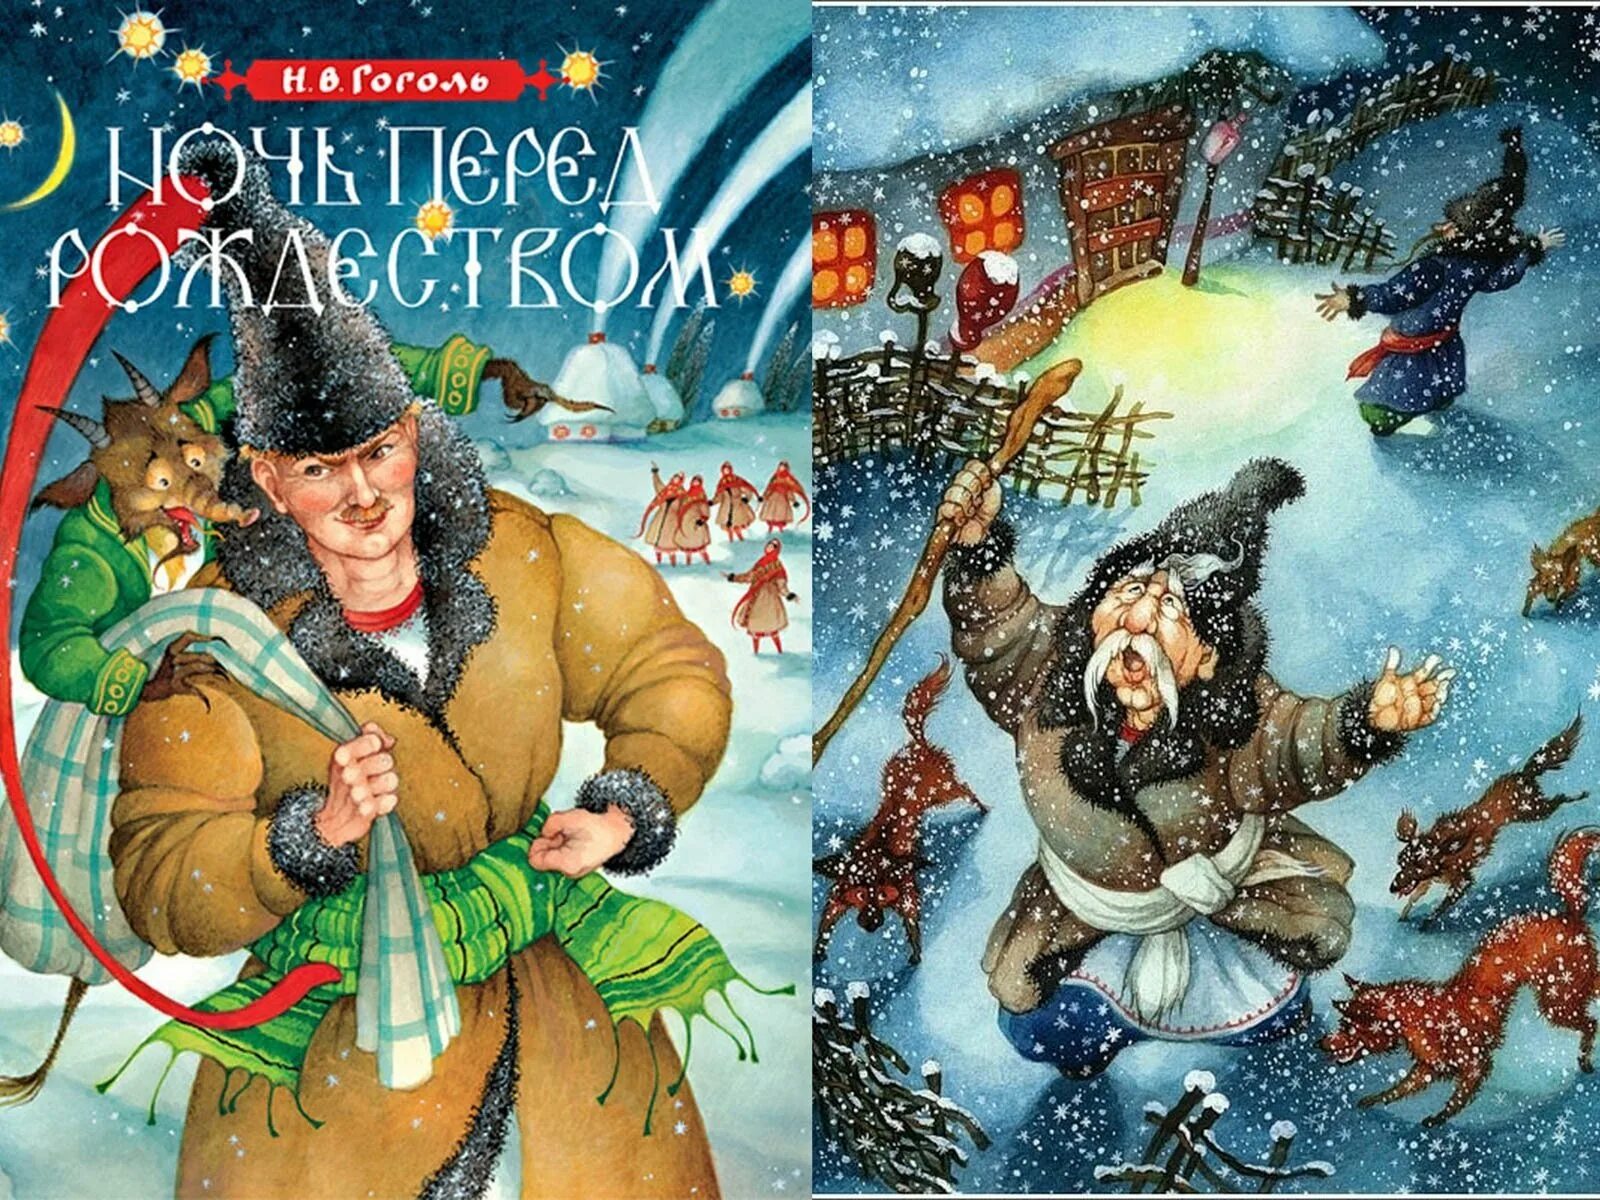 Месяц ночь перед рождеством. Н В Гоголь ночь перед Рождеством. Иллюстрации к книге Гоголя ночь перед Рождеством. Иллюстрацию к произведению н.в.Гоголя "ночь перед Рождеством".